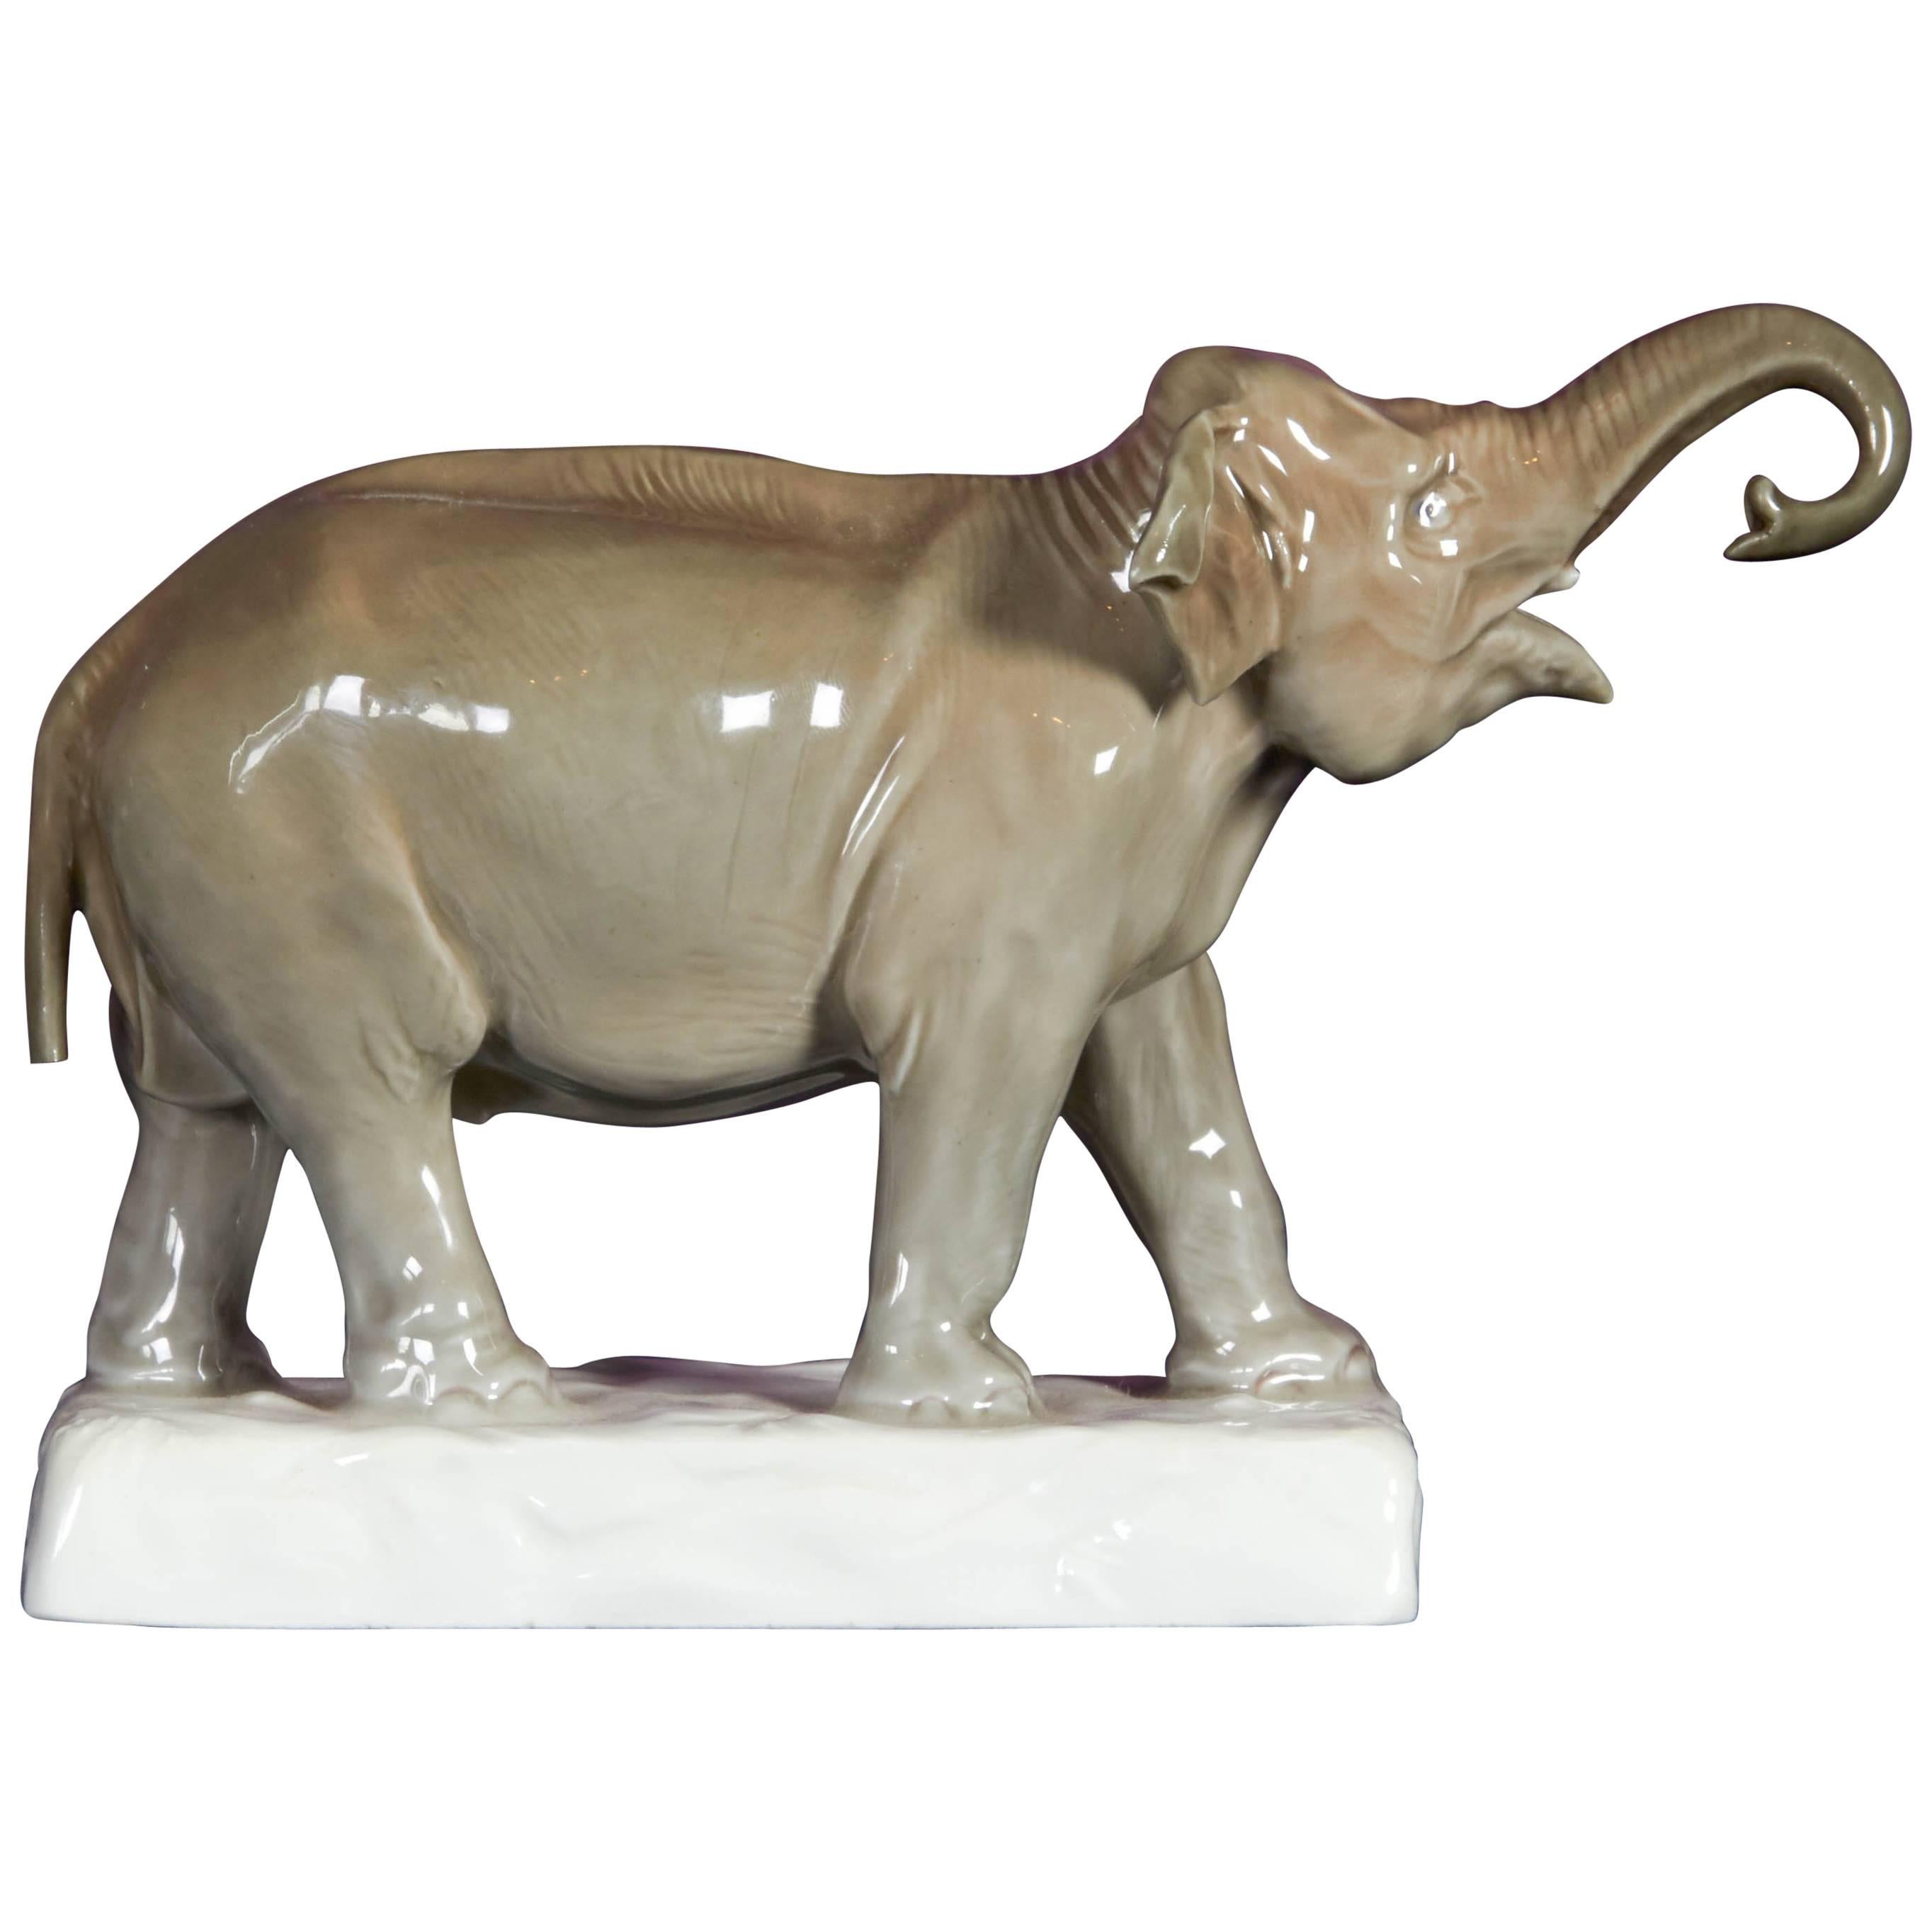 Meissener Porzellanfigur eines Elefanten